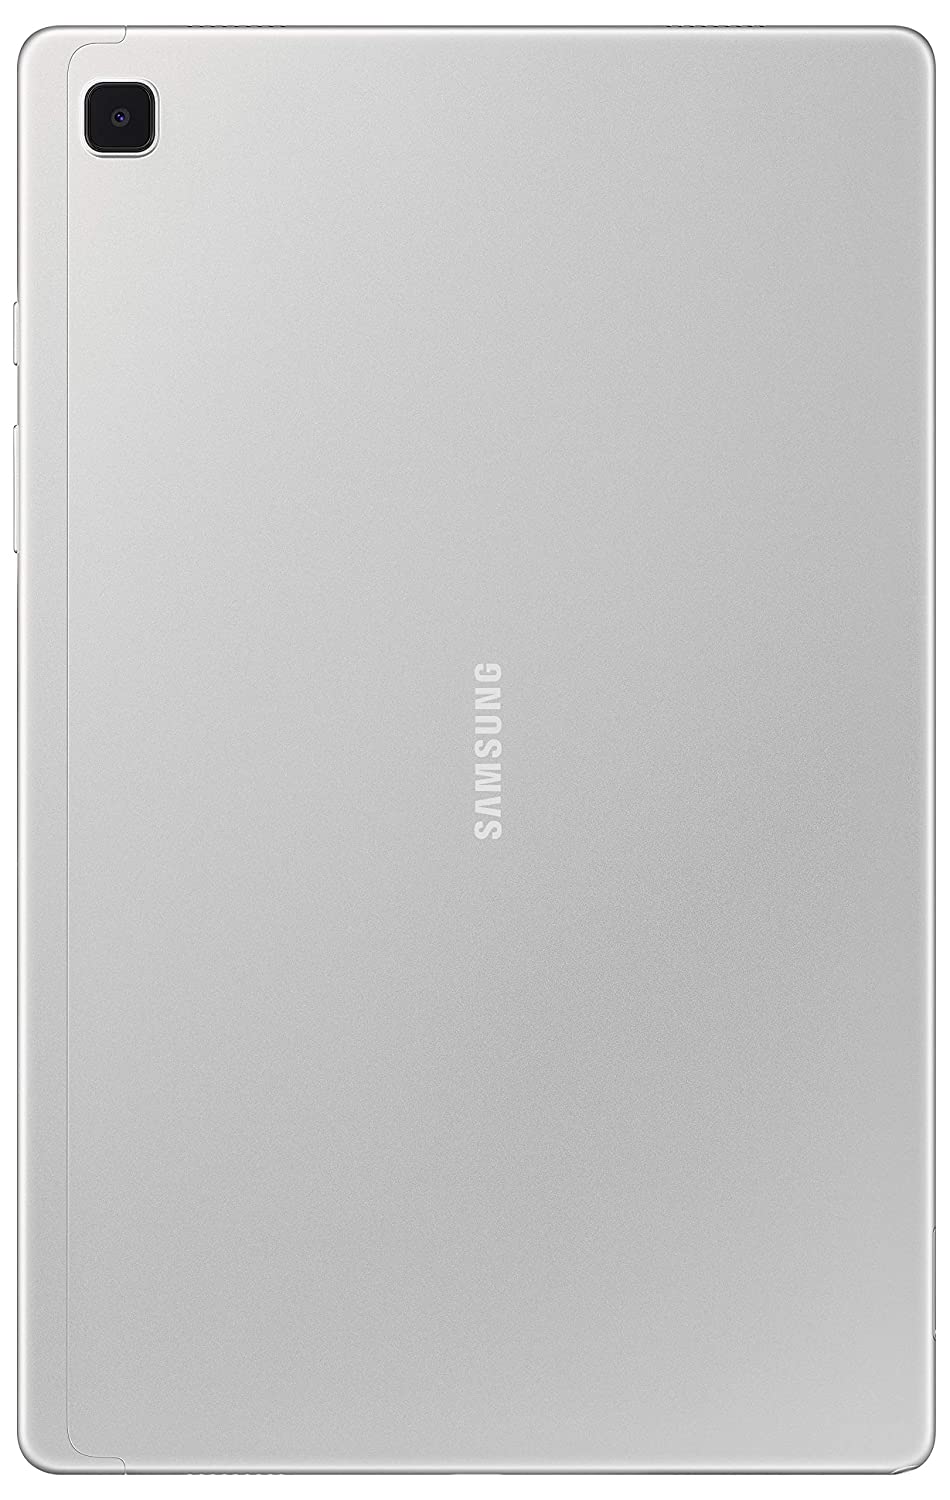 Samsung Galaxy Tab A7 (32GB) Wi-Fi (2020)